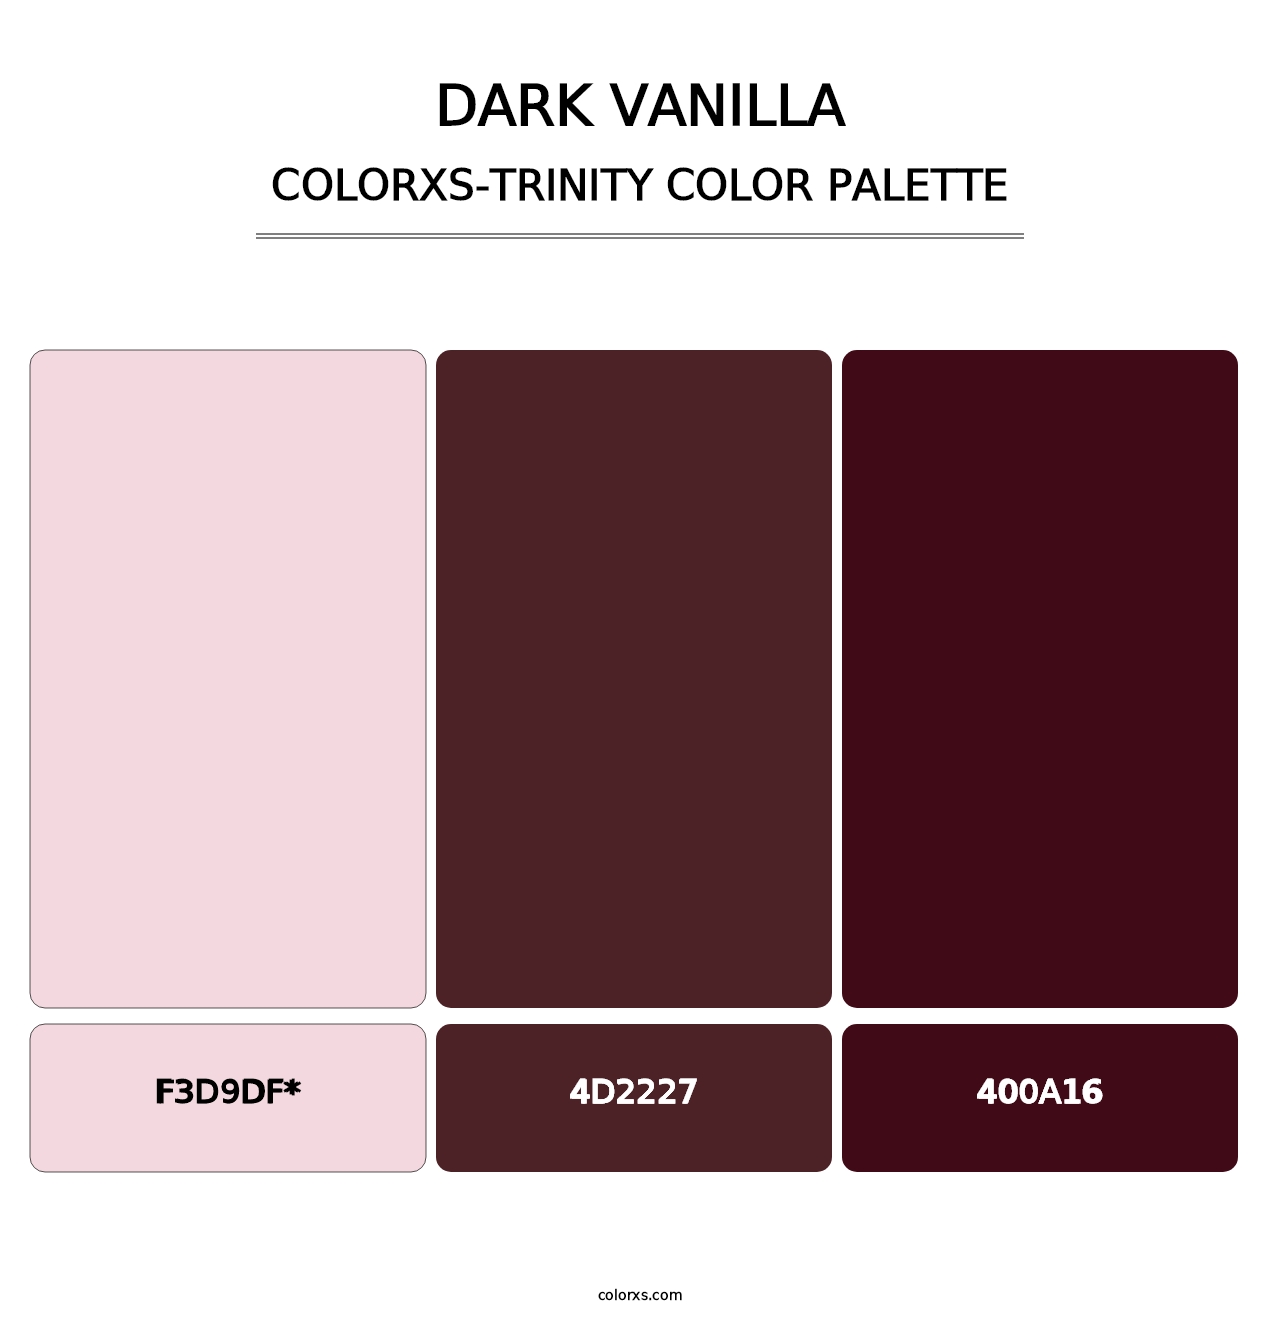 Dark Vanilla - Colorxs Trinity Palette